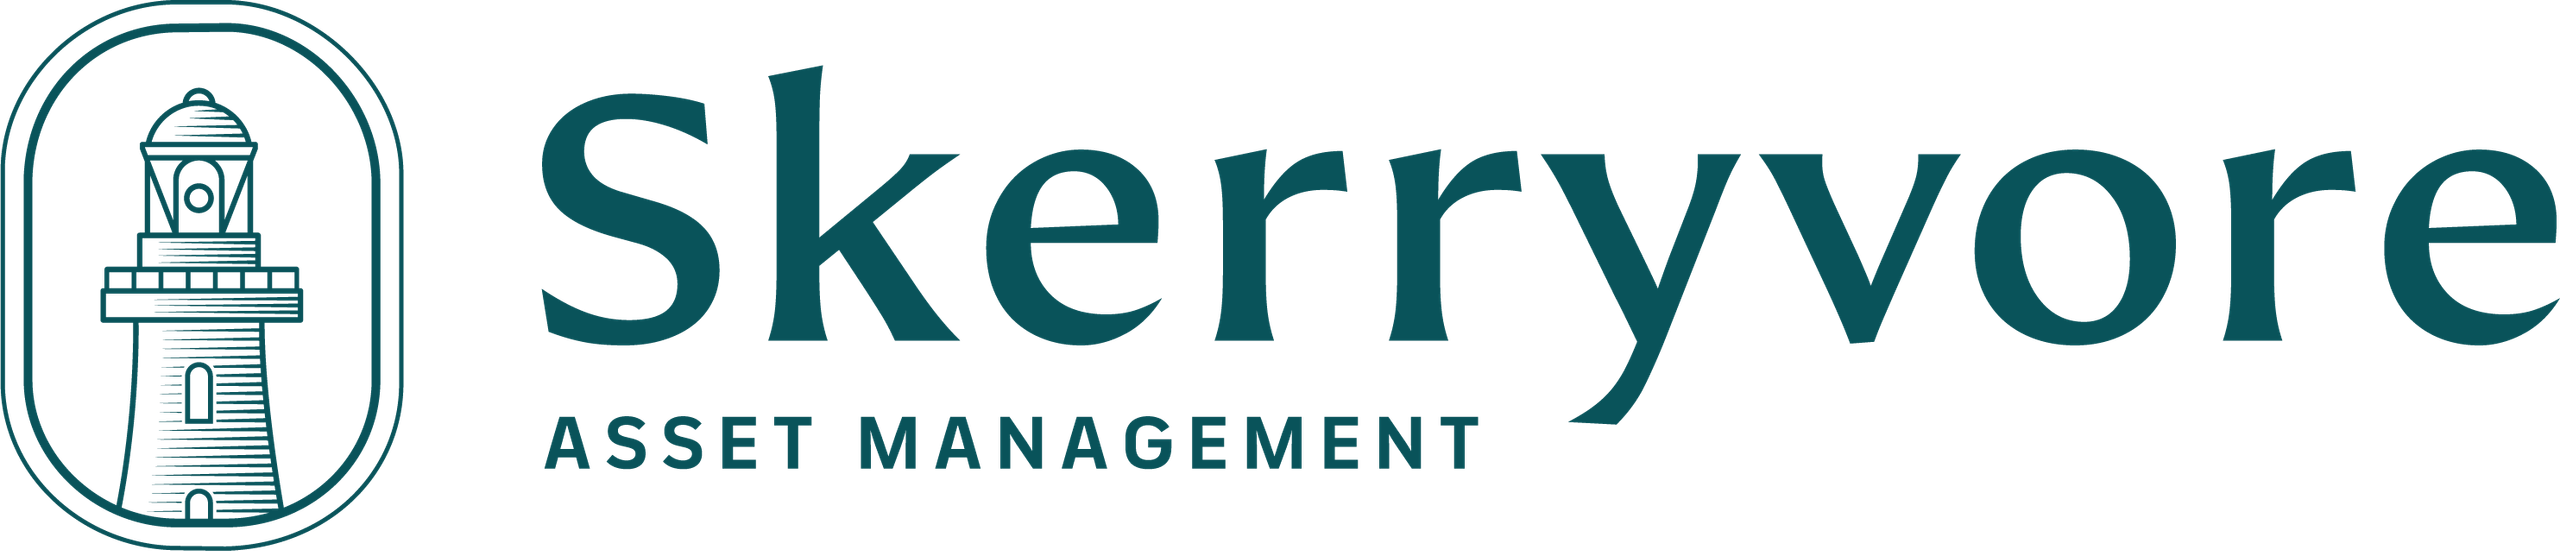 Skerryvore Asset Management - Long-term Returns Emerging Market Managed Investment Fund